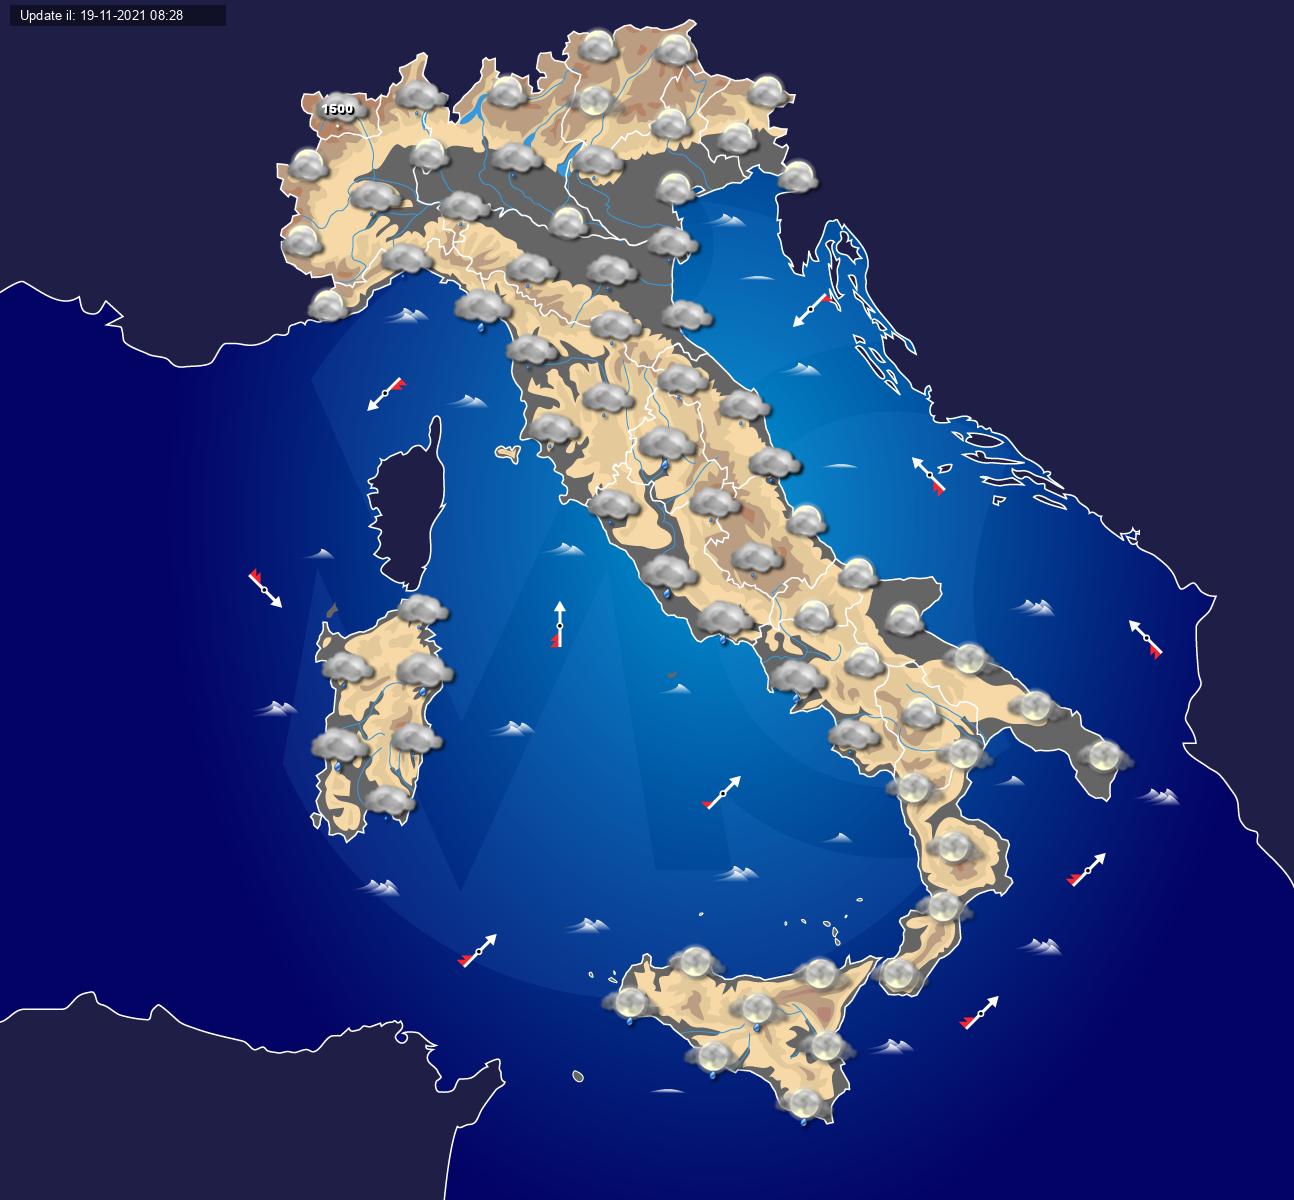 Previsioni meteo per domenica 21 novembre - maltempo in arrivo nella notte - Centro Meteo Italiano